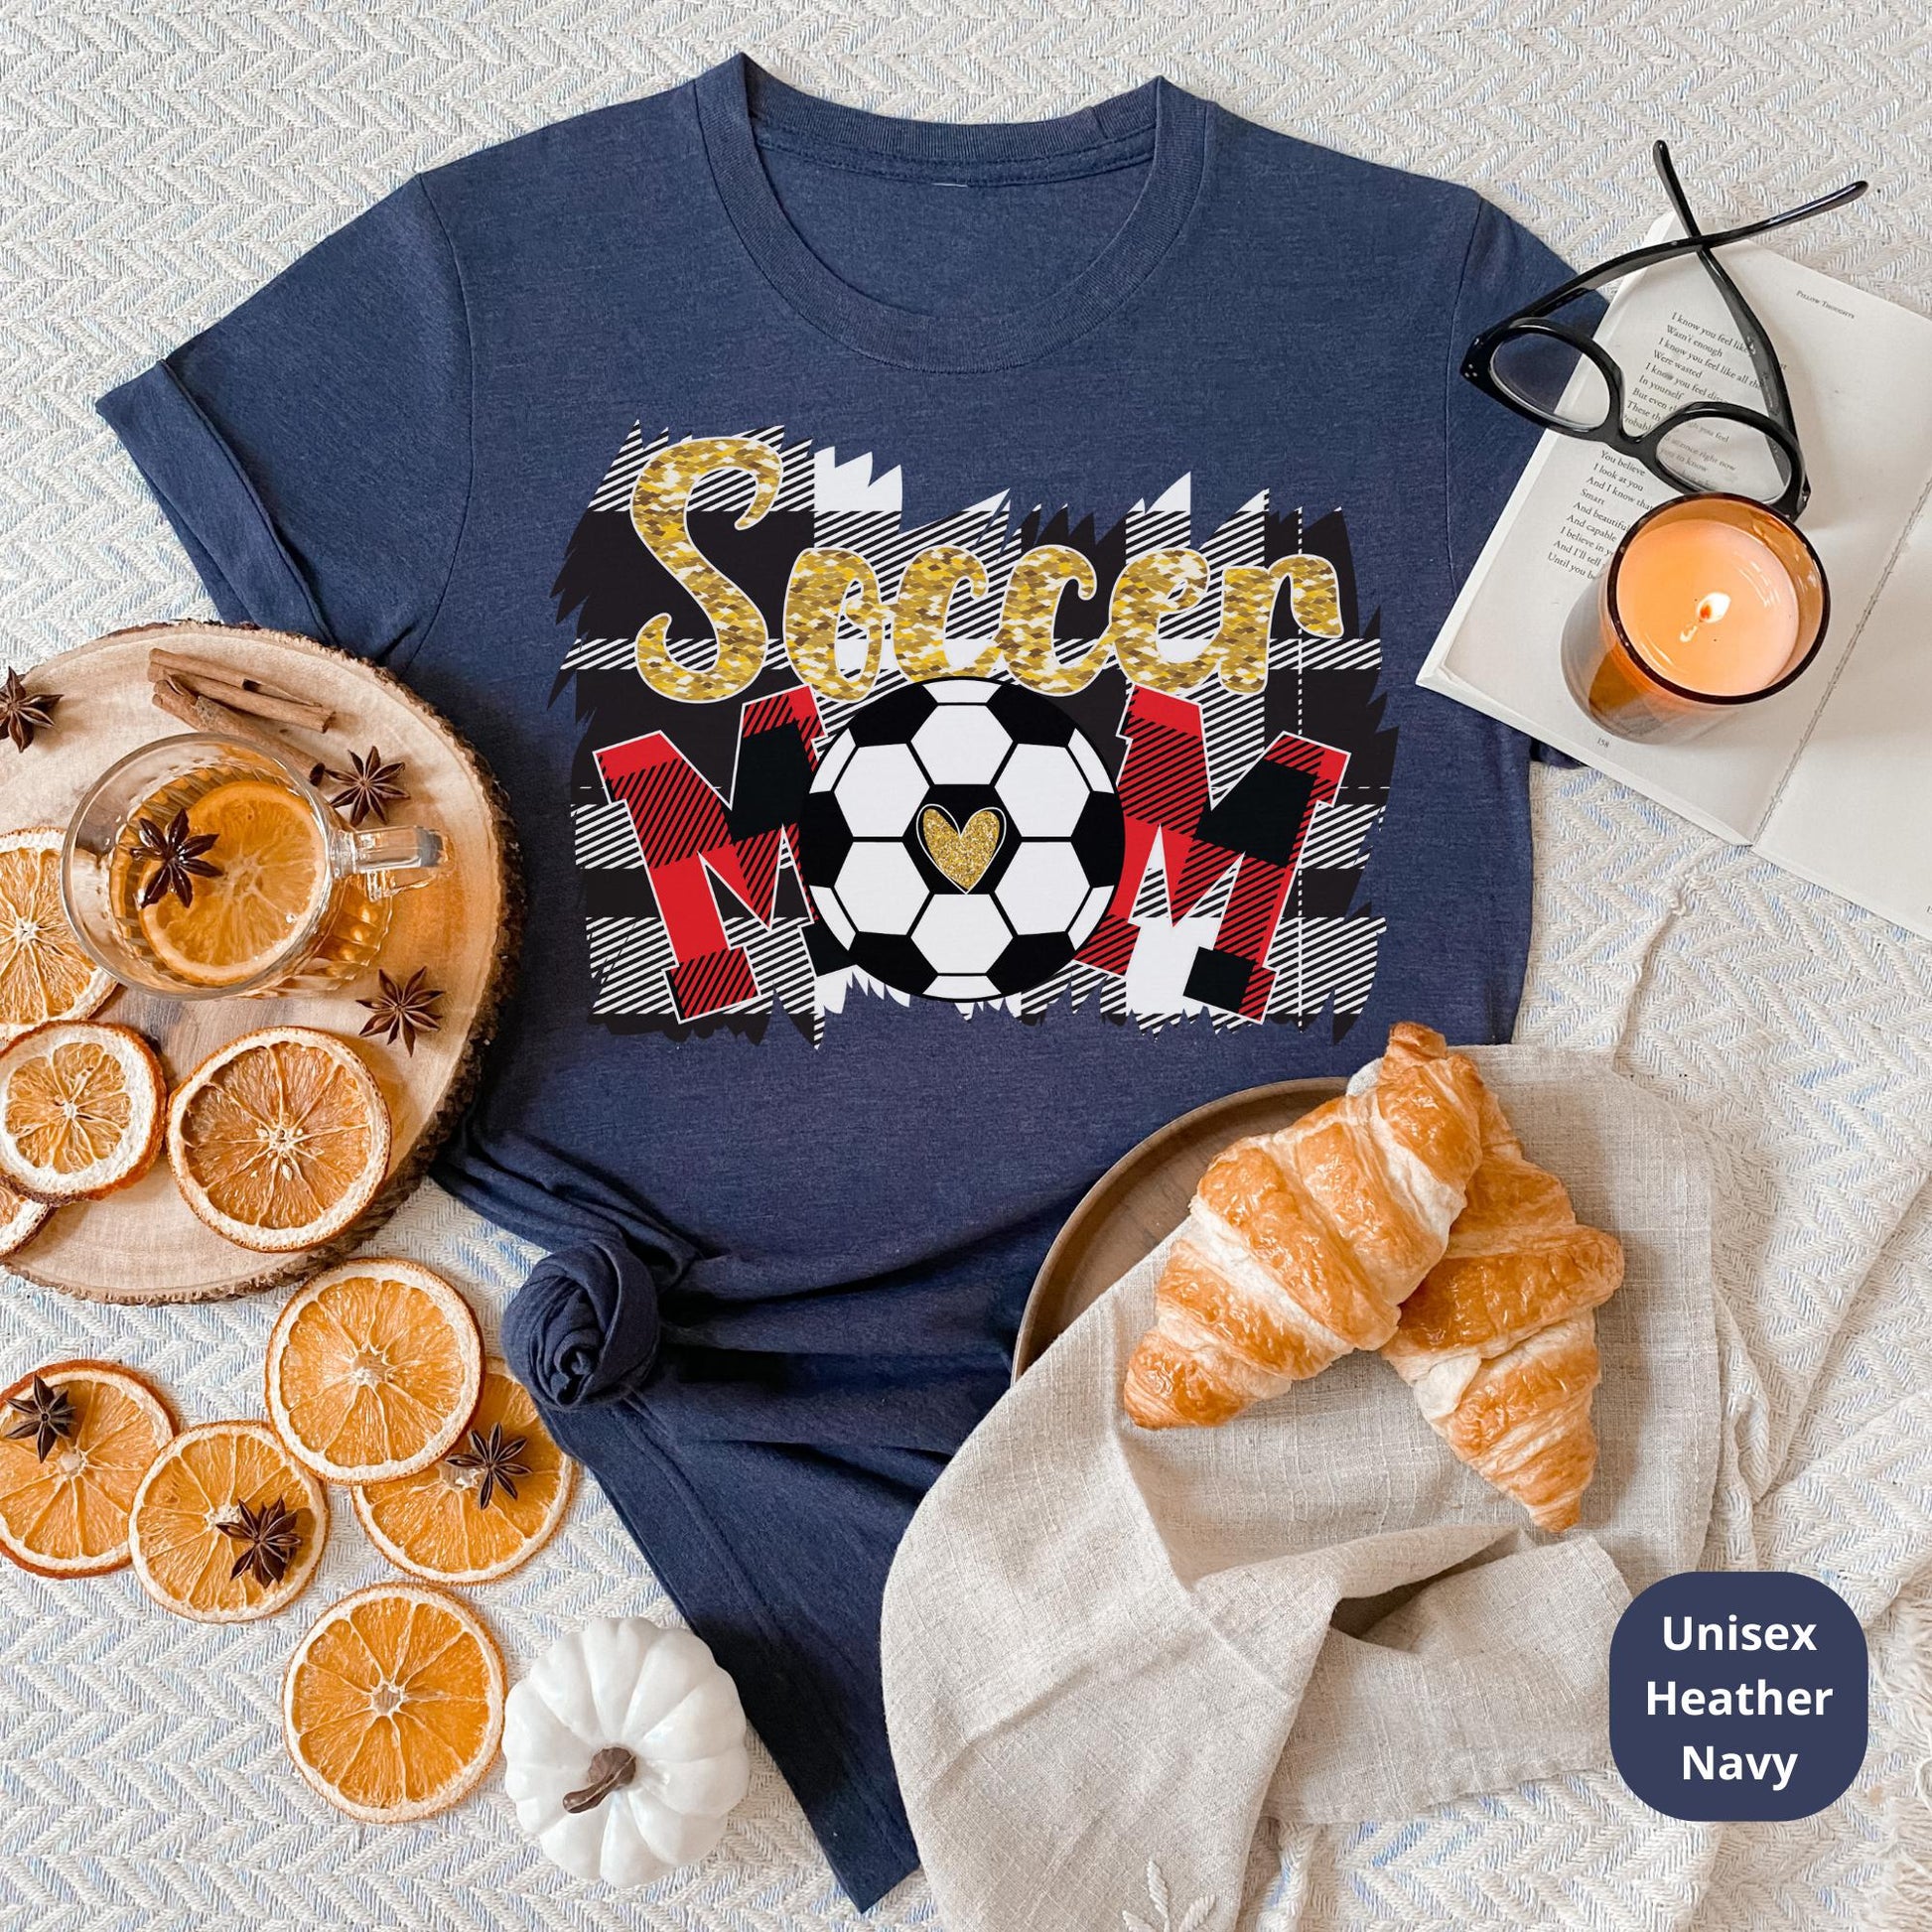 Soccer mom shirt HMDesignStudioUS